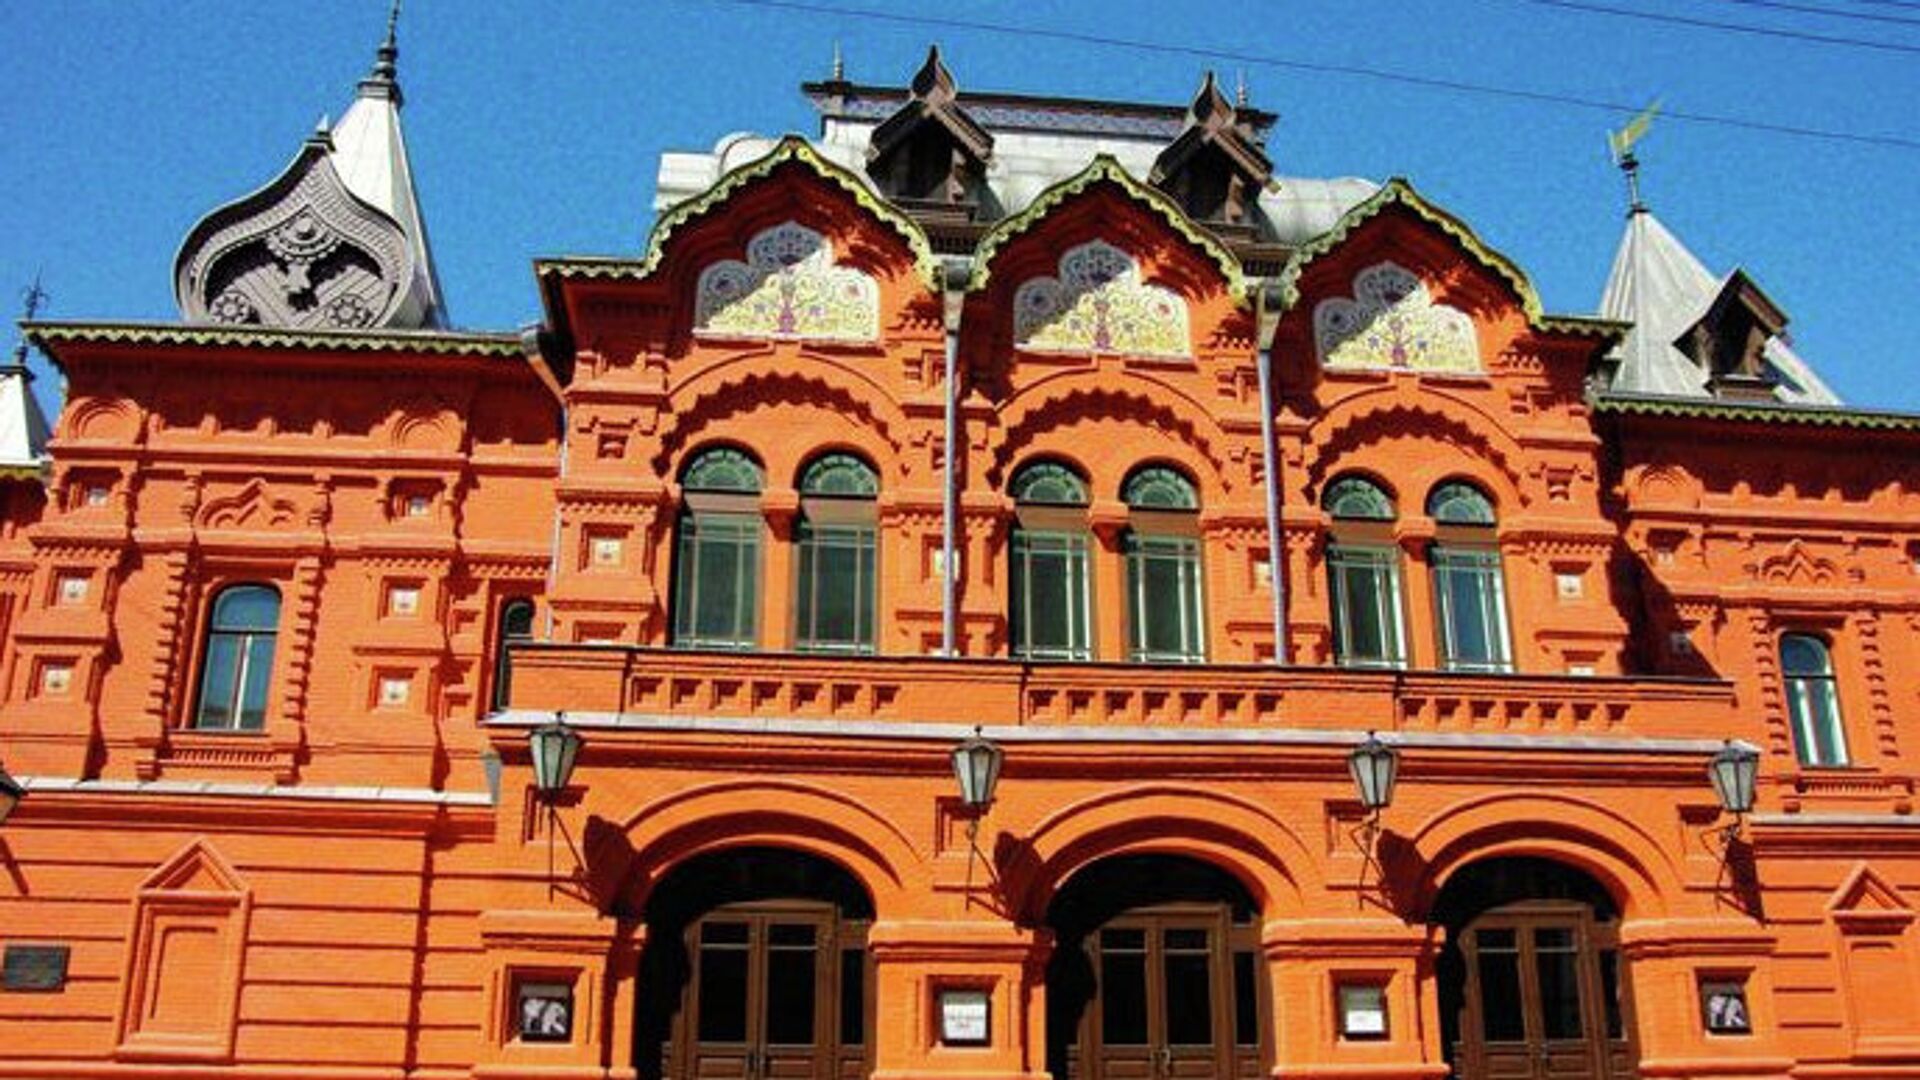 Театр наций петровский